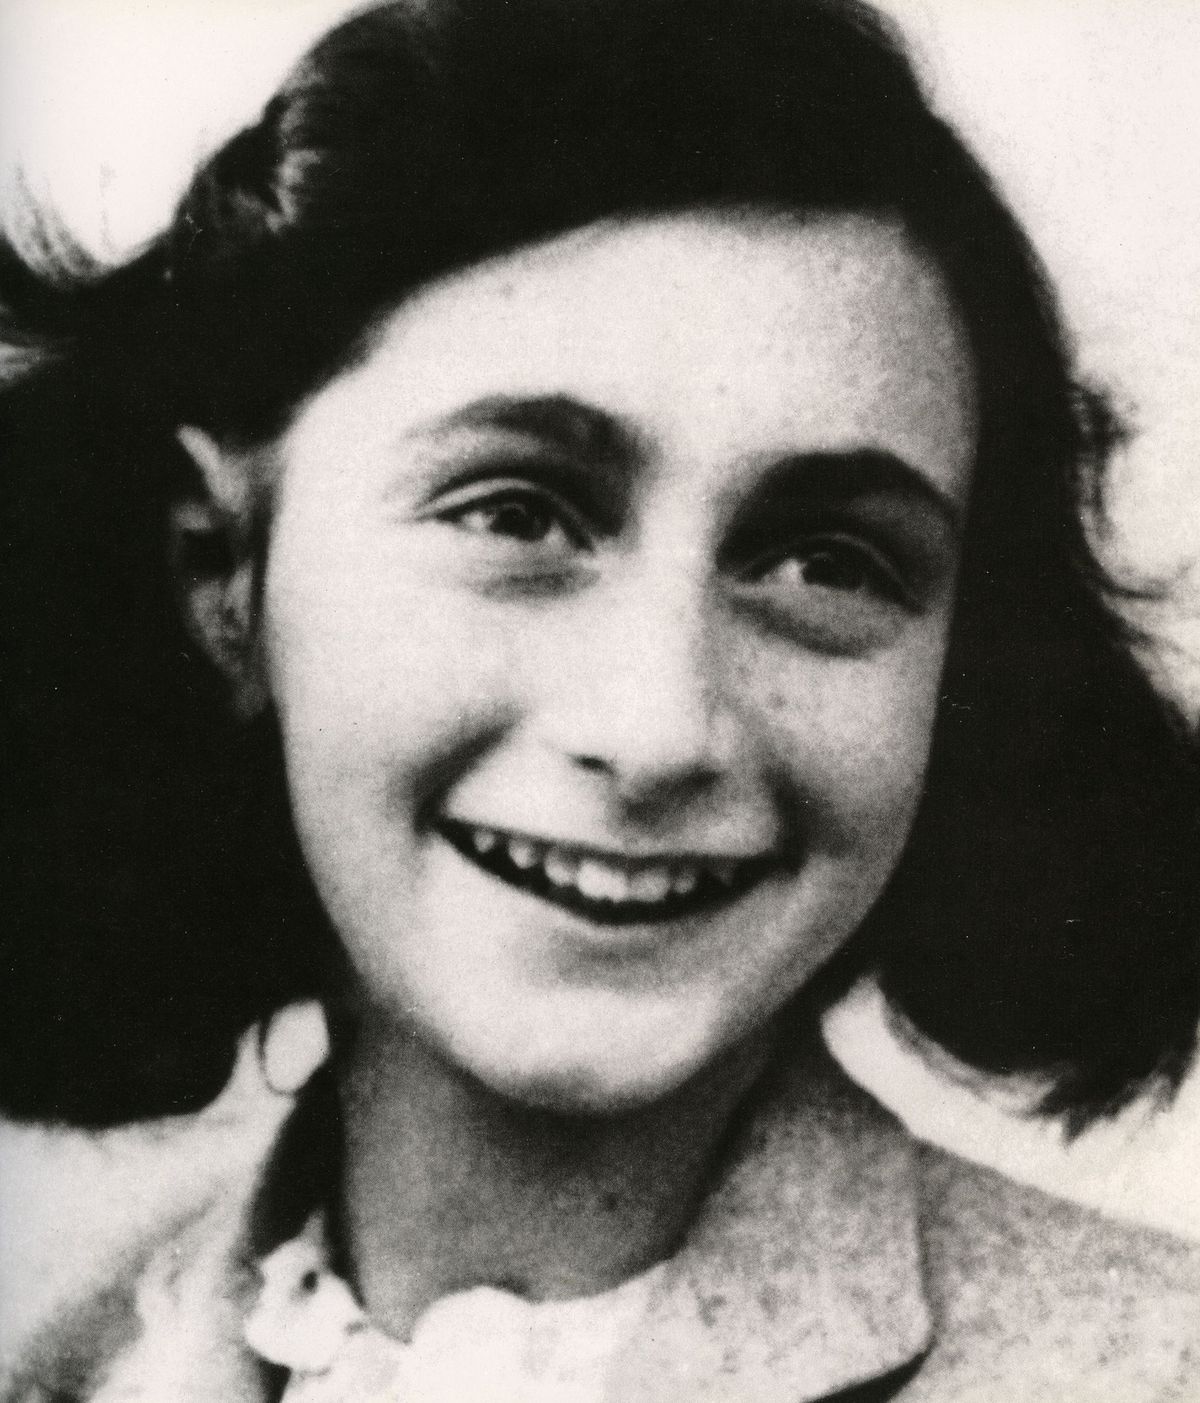 Anne Frank is beroemd geworden door haar dagboek waarin ze schreef over haar leven als onderduiker tijdens de Holocaust Ze werd een krachtig symbool voor de genocide door de nazis waarbij zes miljoen Joden en circa vijf miljoen nietJoodse slachtoffers om het leven werden gebracht Er zijn tot op heden zon dertig miljoen exemplaren van haar dagboek verkocht